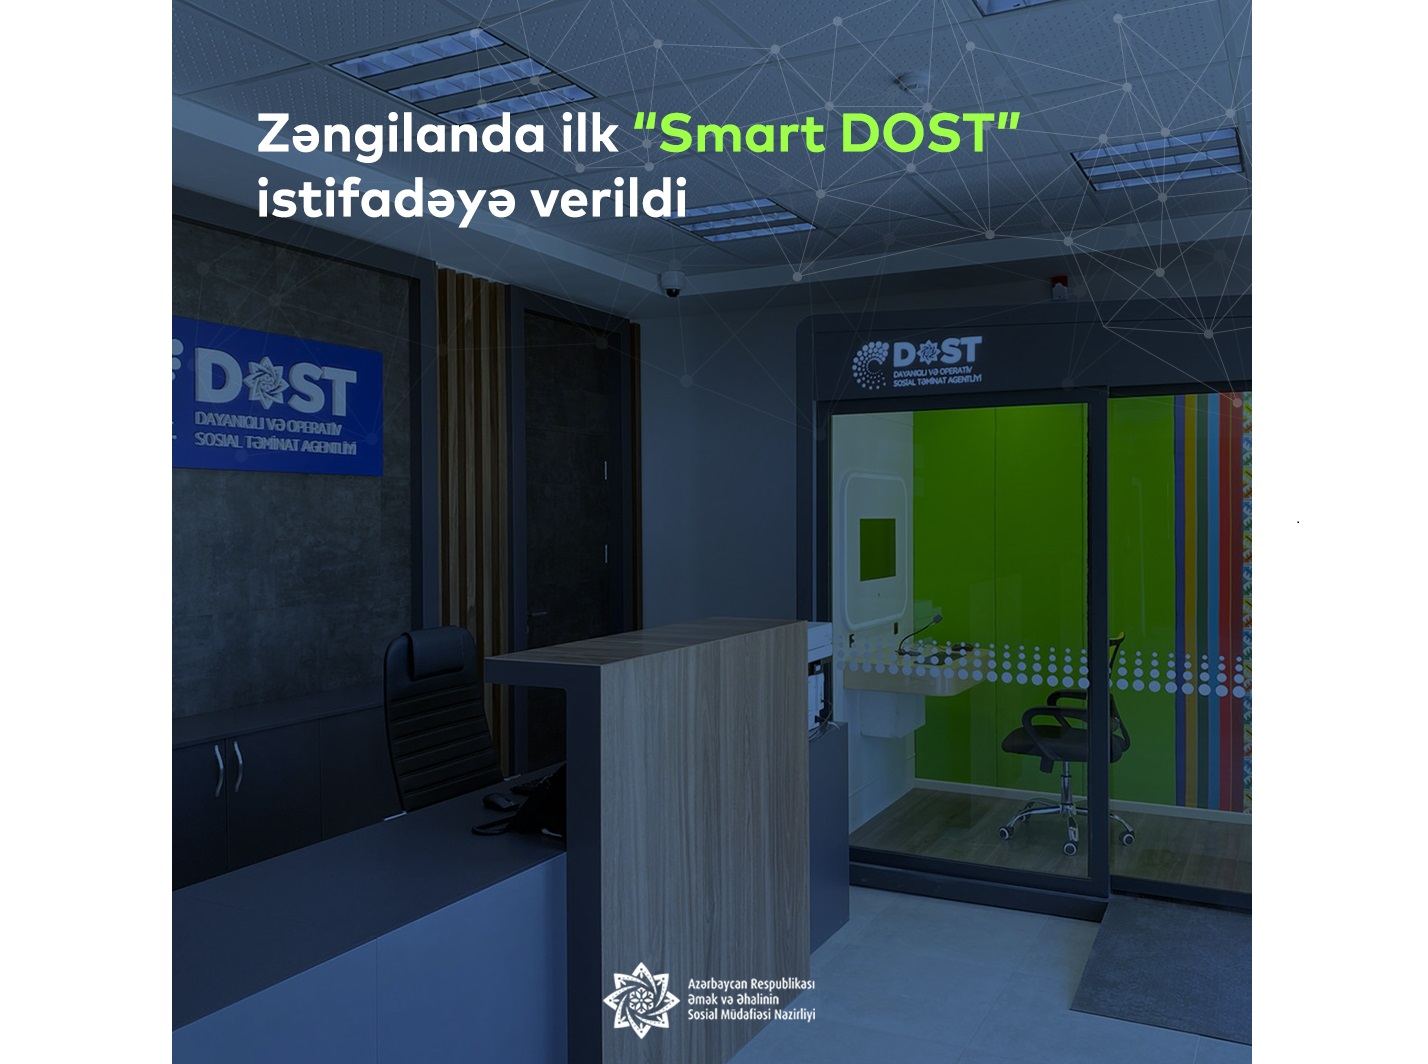 Zəngilanda “Ağıllı kənd” layihəsi üzrə ilk “Smart DOST” məntəqəsi istifadəyə verilib (FOTO)